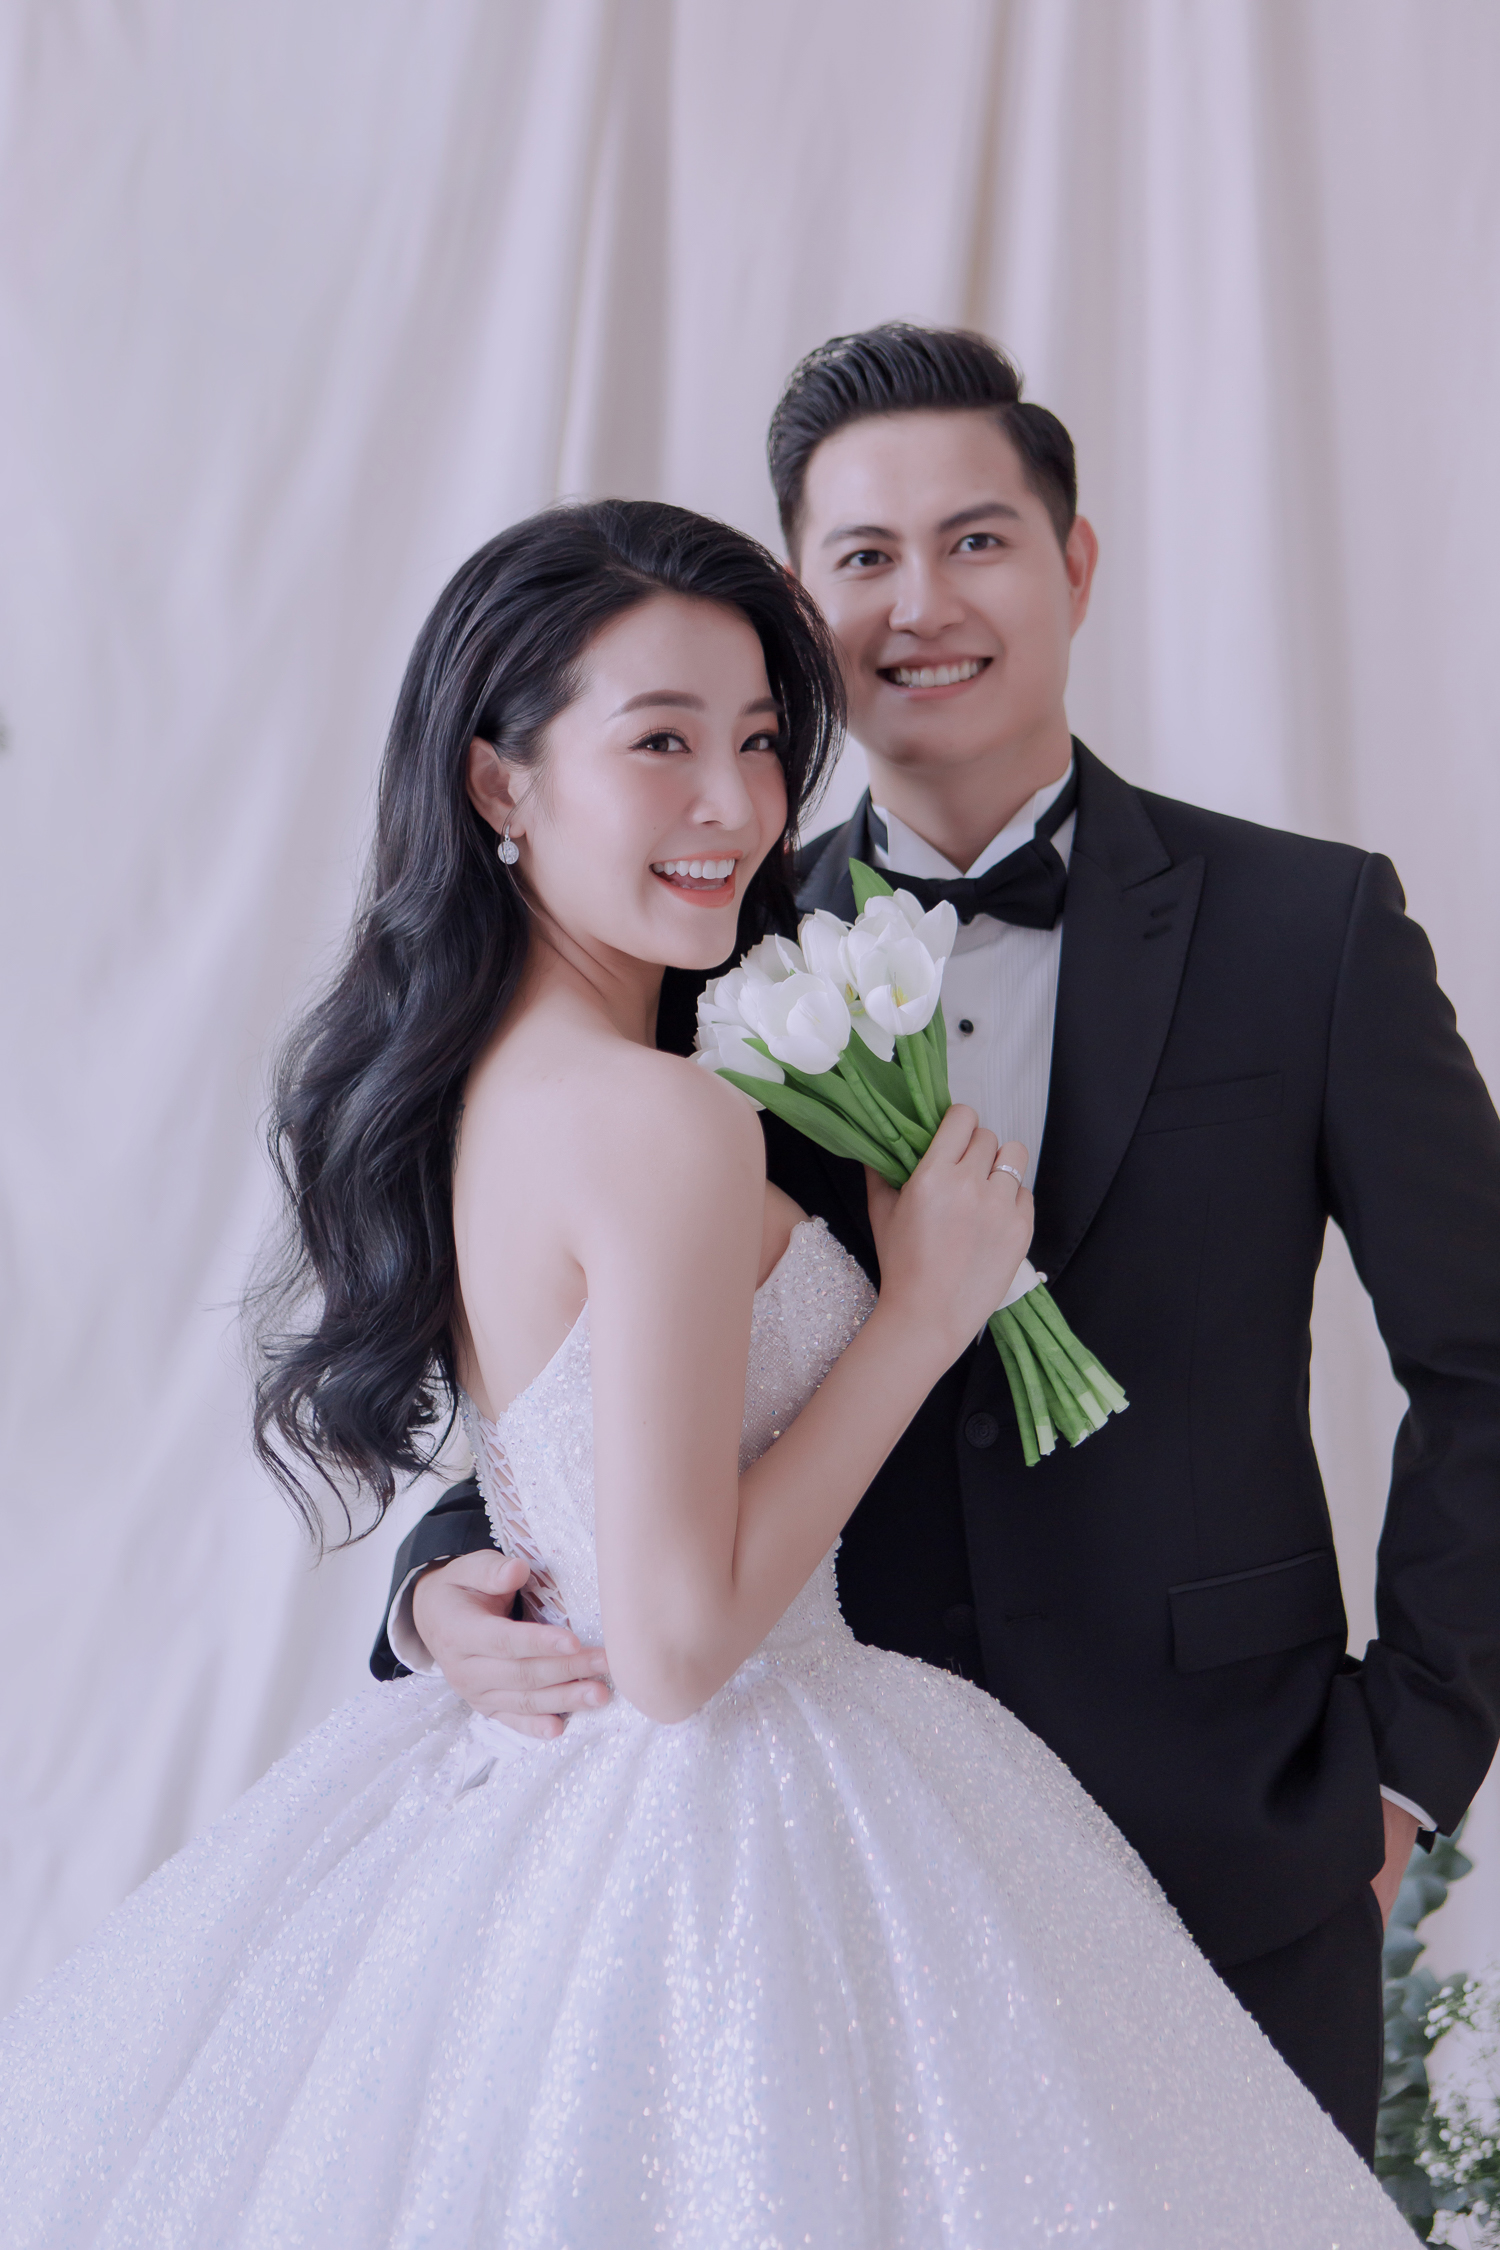 Hé lộ bộ ảnh cưới của Karen Nguyễn cùng ông xã: Áo cưới được đính kết hơn 1000 viên pha lê - ảnh 1